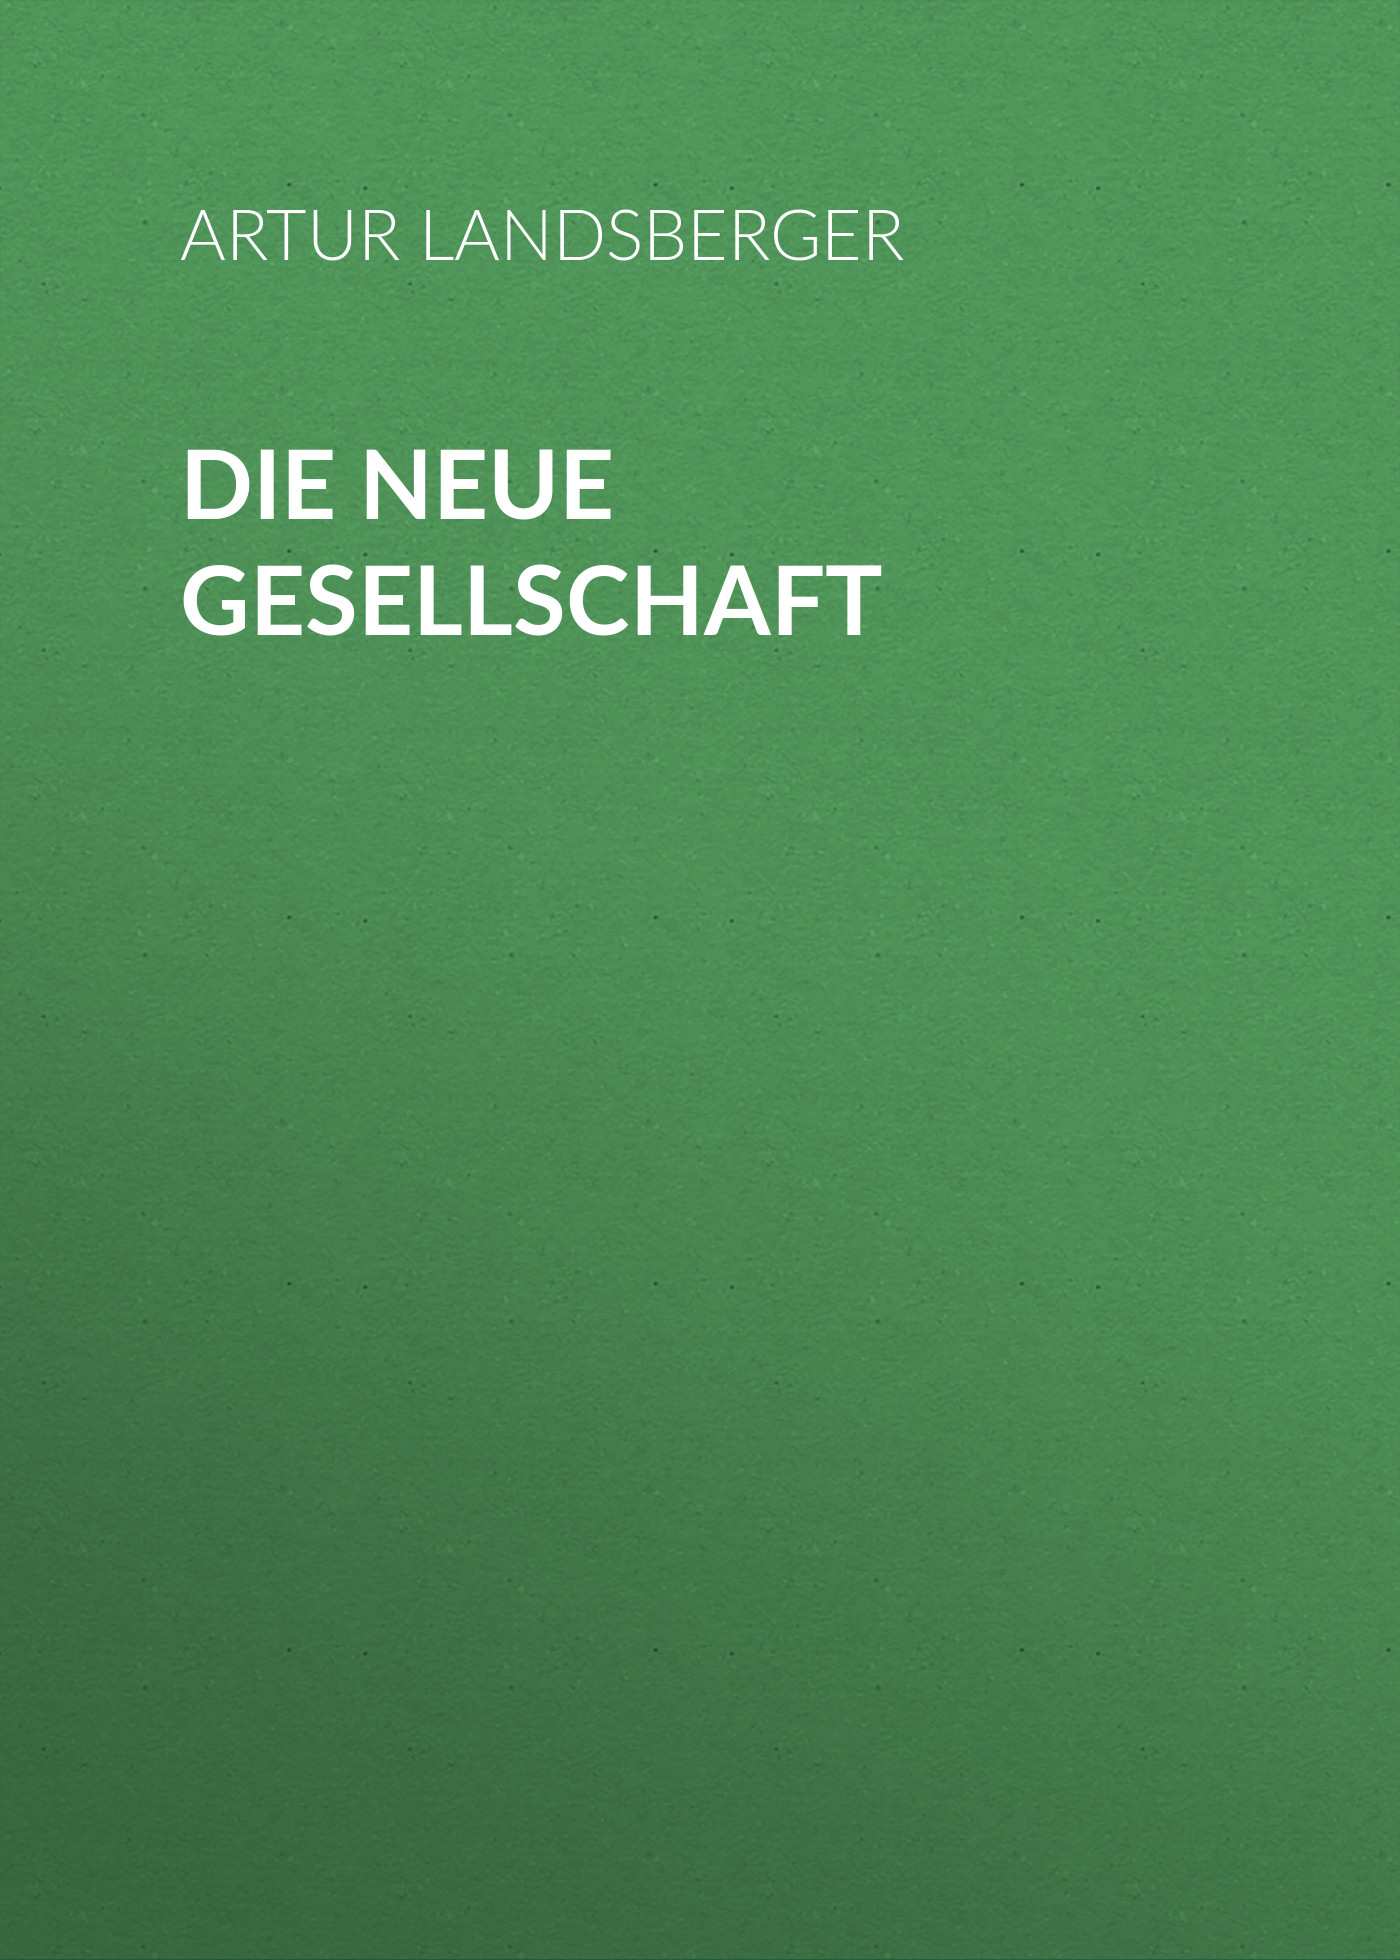 Книга Die neue Gesellschaft из серии , созданная Artur Landsberger, может относится к жанру Зарубежная классика. Стоимость электронной книги Die neue Gesellschaft с идентификатором 48632972 составляет 0 руб.